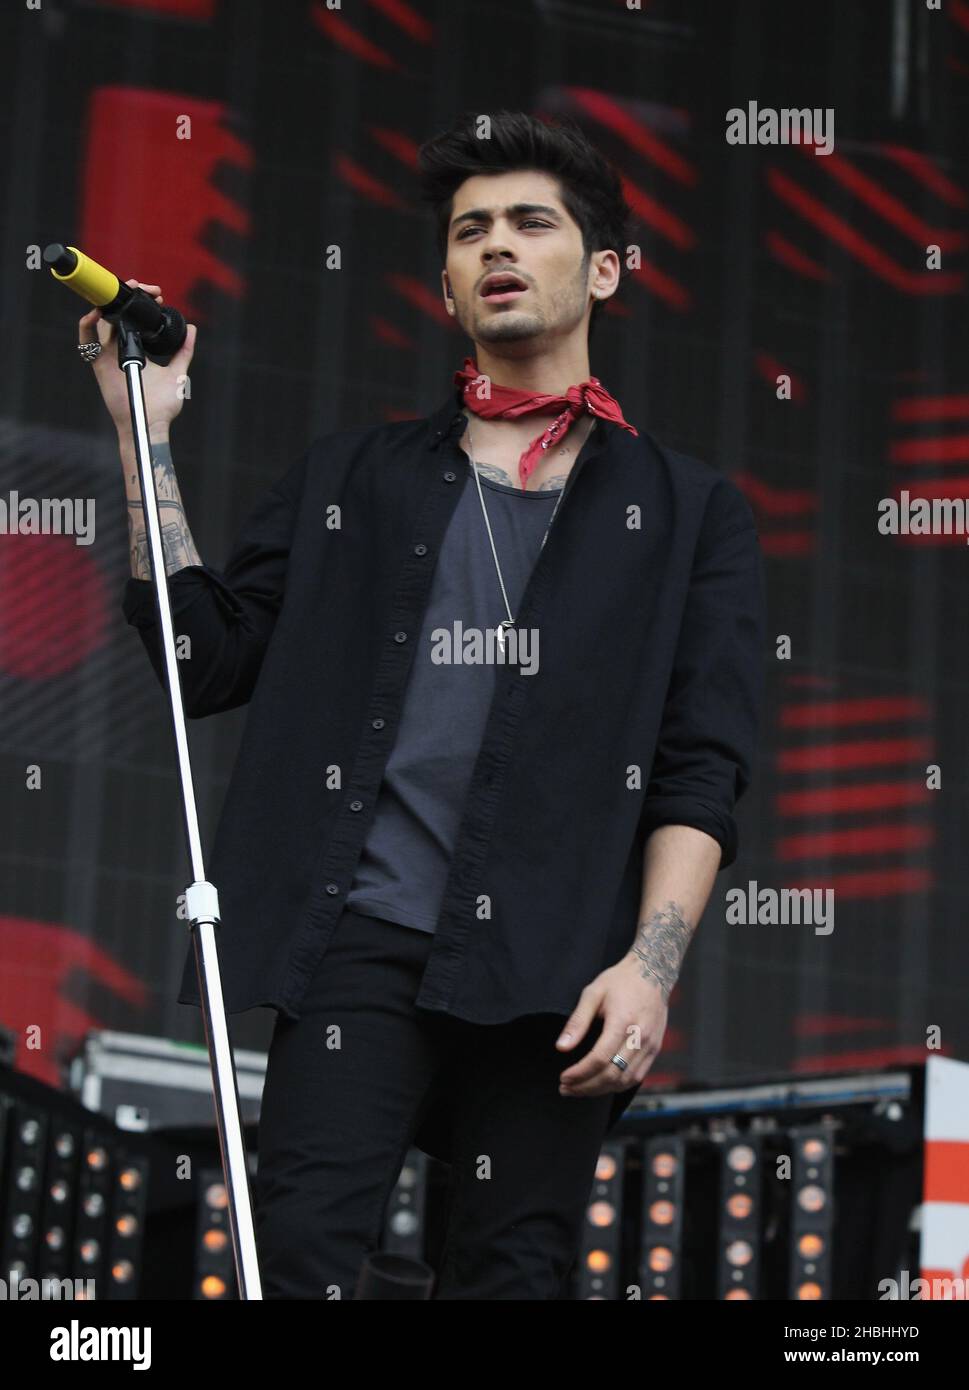 Zayn Malik von One Direction tritt während des BBC Radio 1 Big Weekend Festivals in Glasgow, Schottland, auf der Bühne auf. Stockfoto